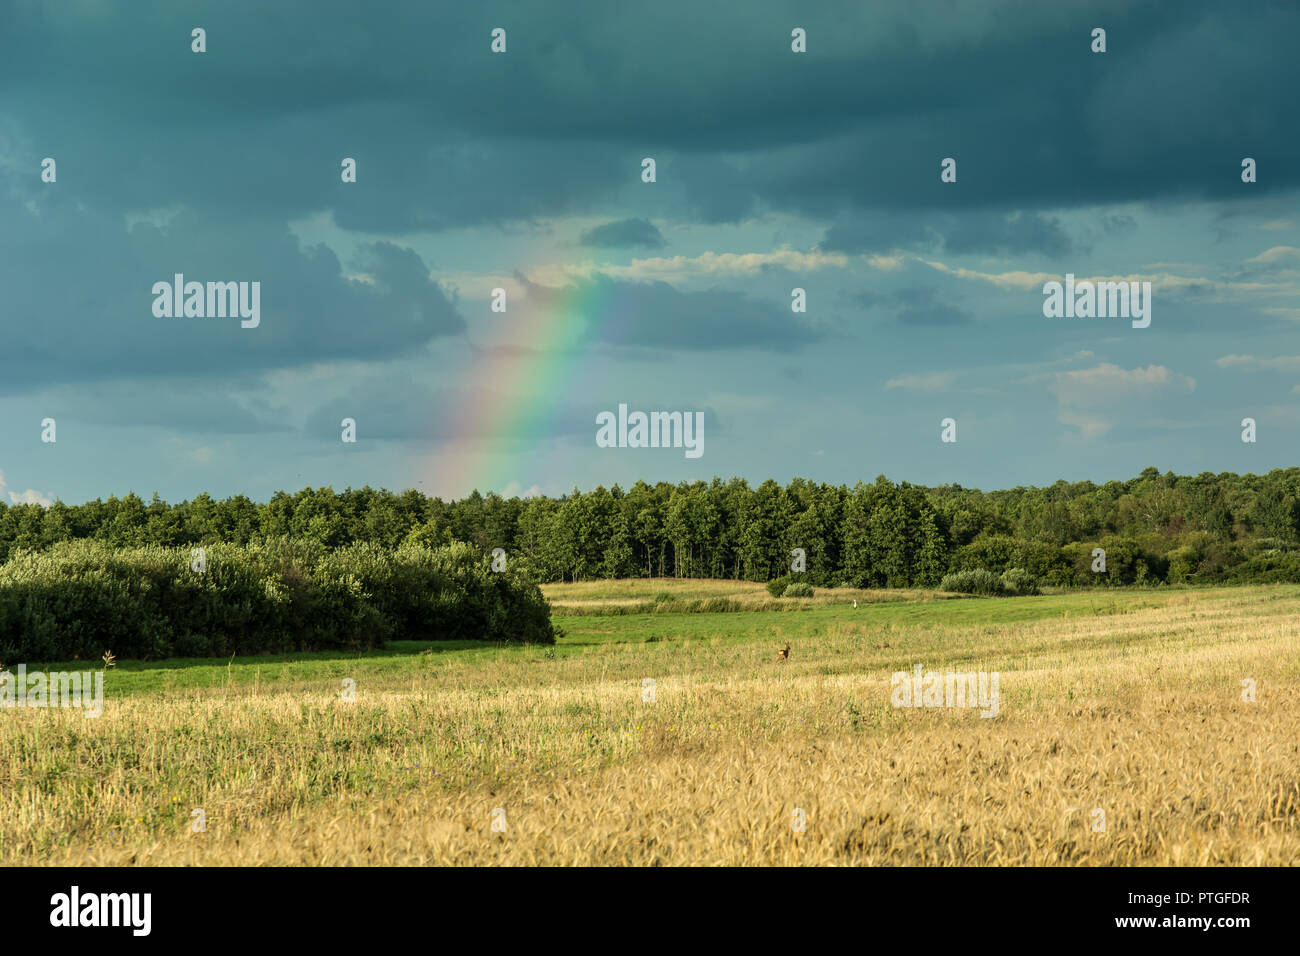 Wald hinter einem Feld von Getreide, Regenbogen und Wolken im Himmel Stockfoto